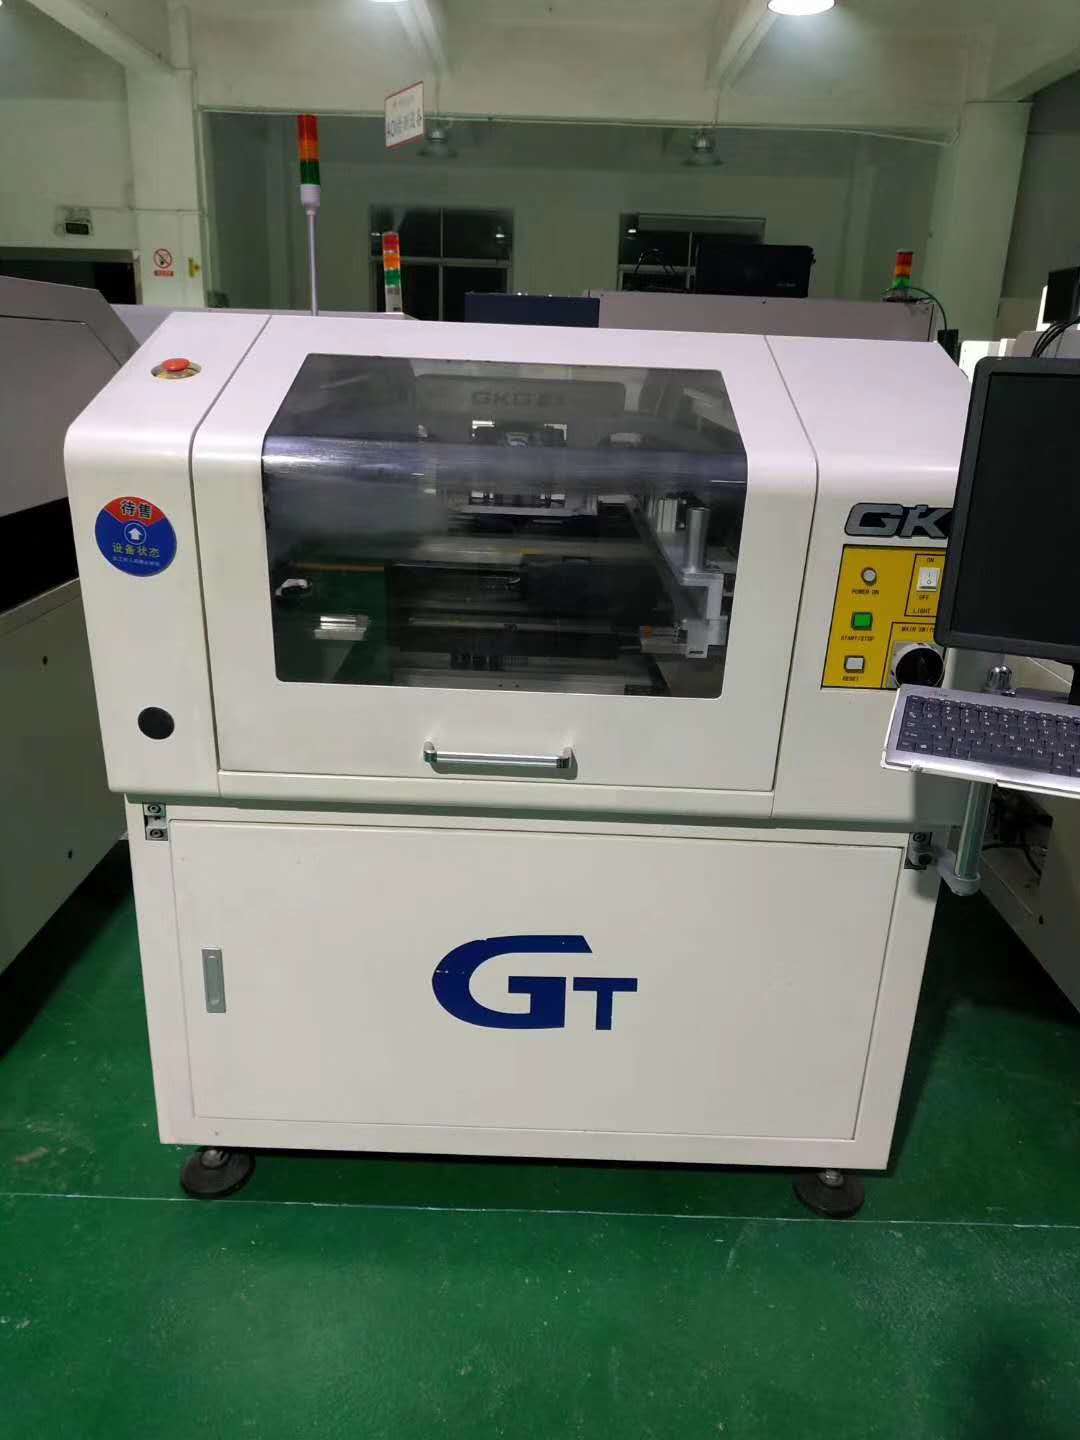 二手全自动印刷机GKG全自动印刷机GT+刷大板国产印刷机租售